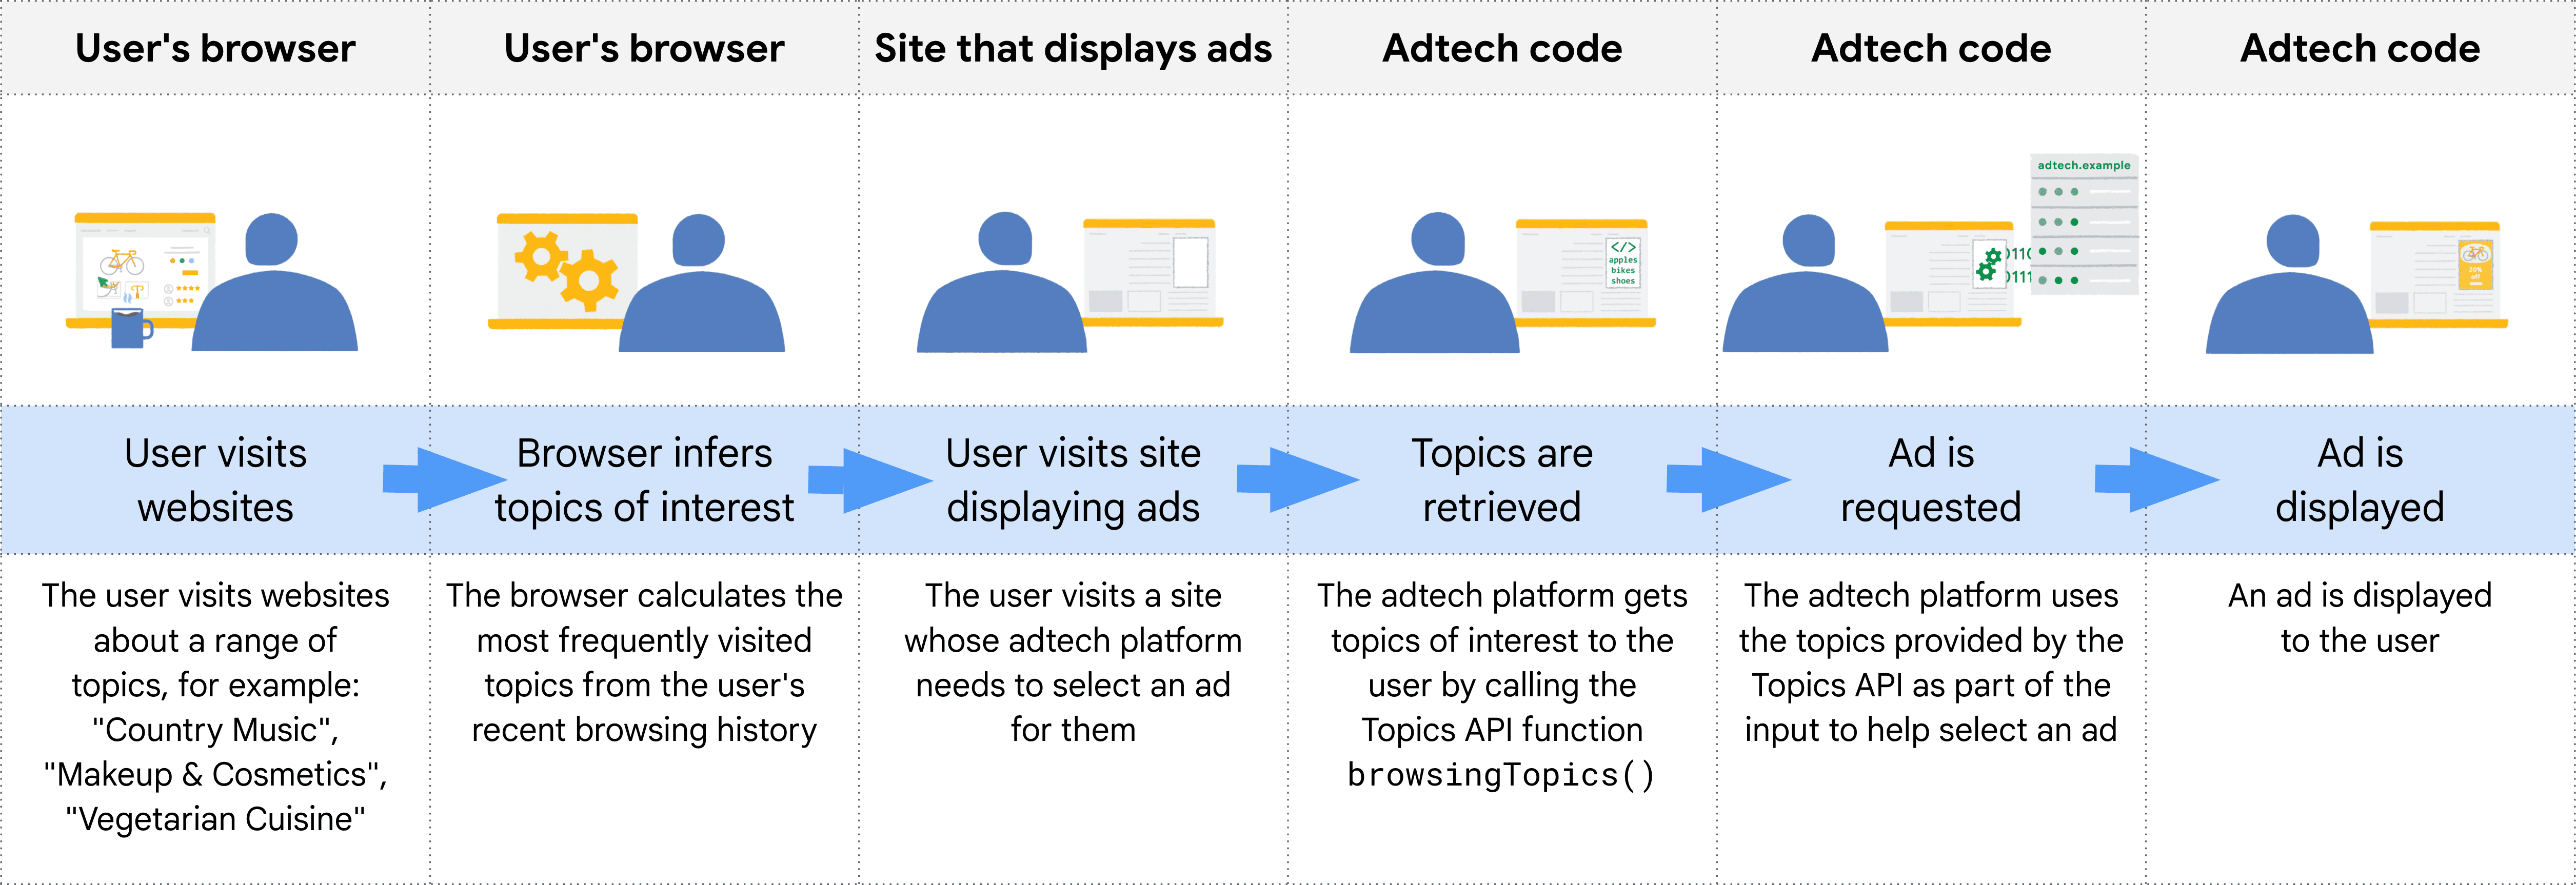 웹사이트 방문부터 광고 게재까지 Topics API 수명 주기의 단계를 보여주는 다이어그램